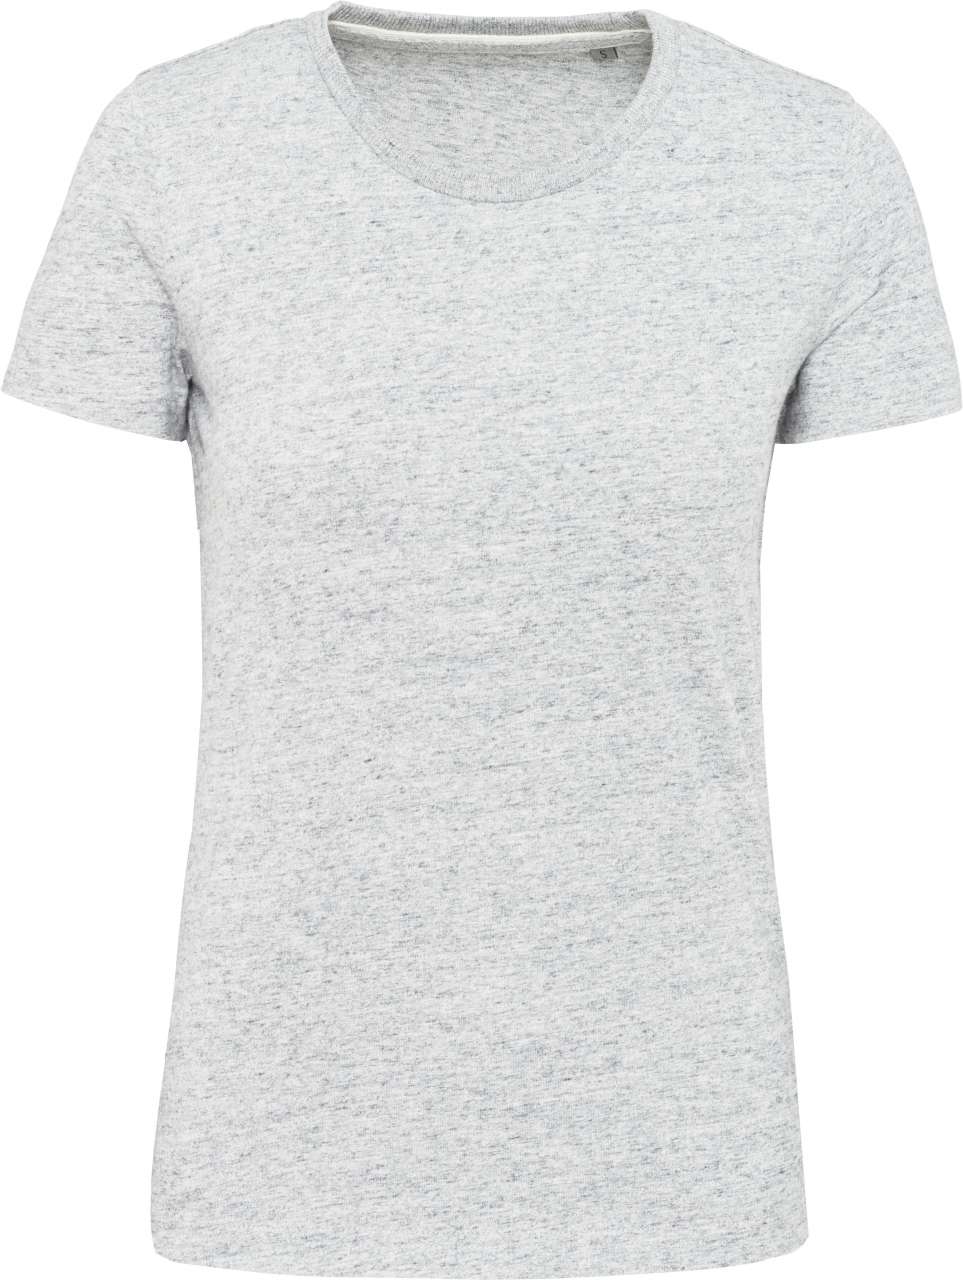 Kariban Damen T-Shirt Oberteil Kurzarm Tshirt Rundhals Baumwolle